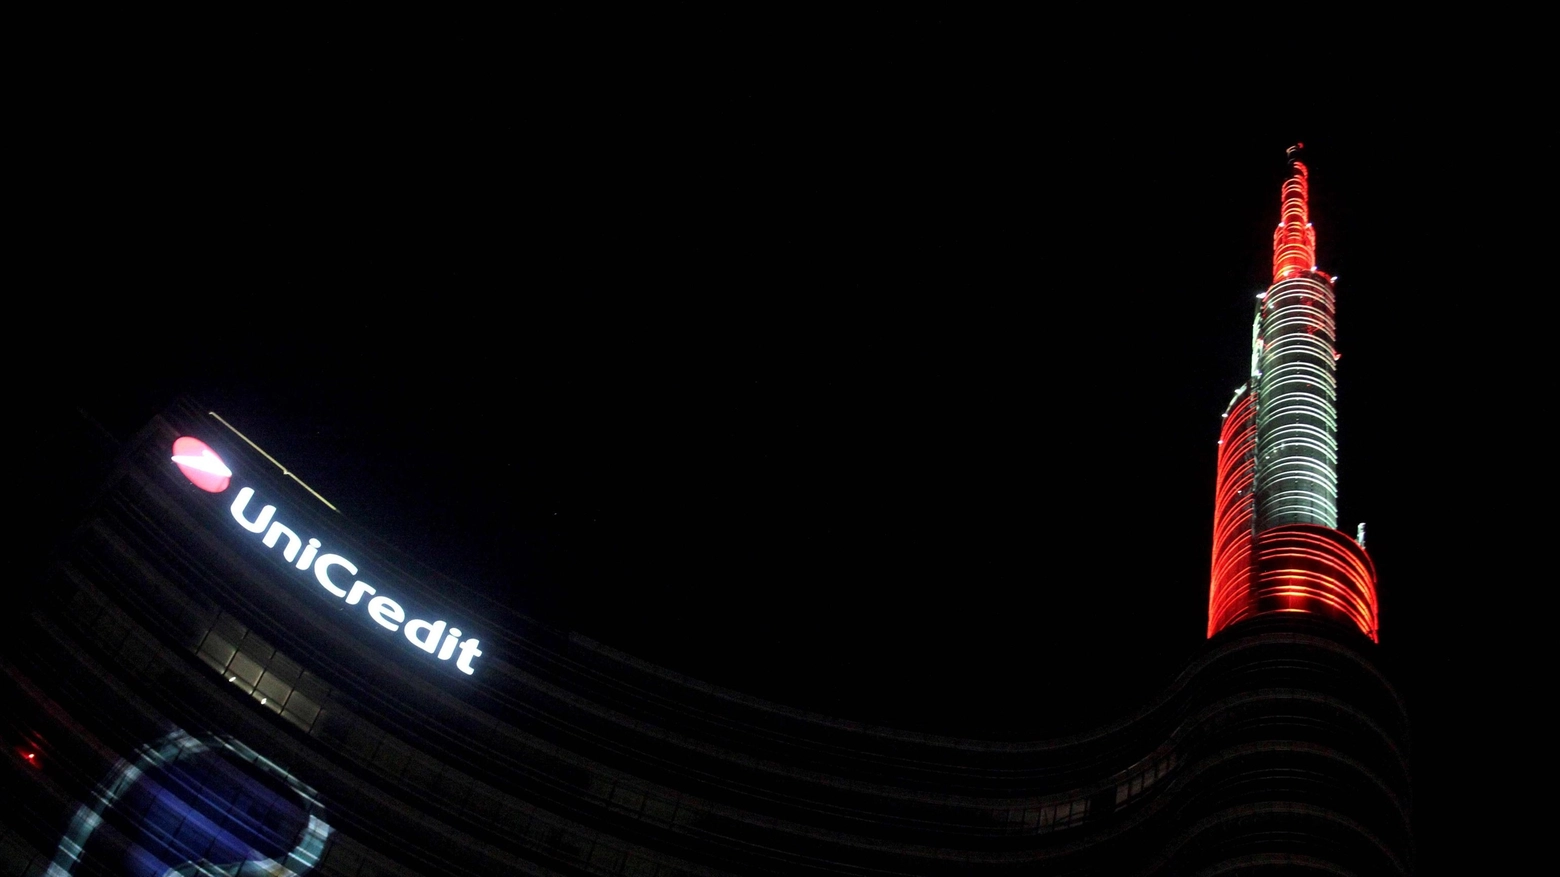 Torre Unicredit illuminata con i colori squadre Champions League 